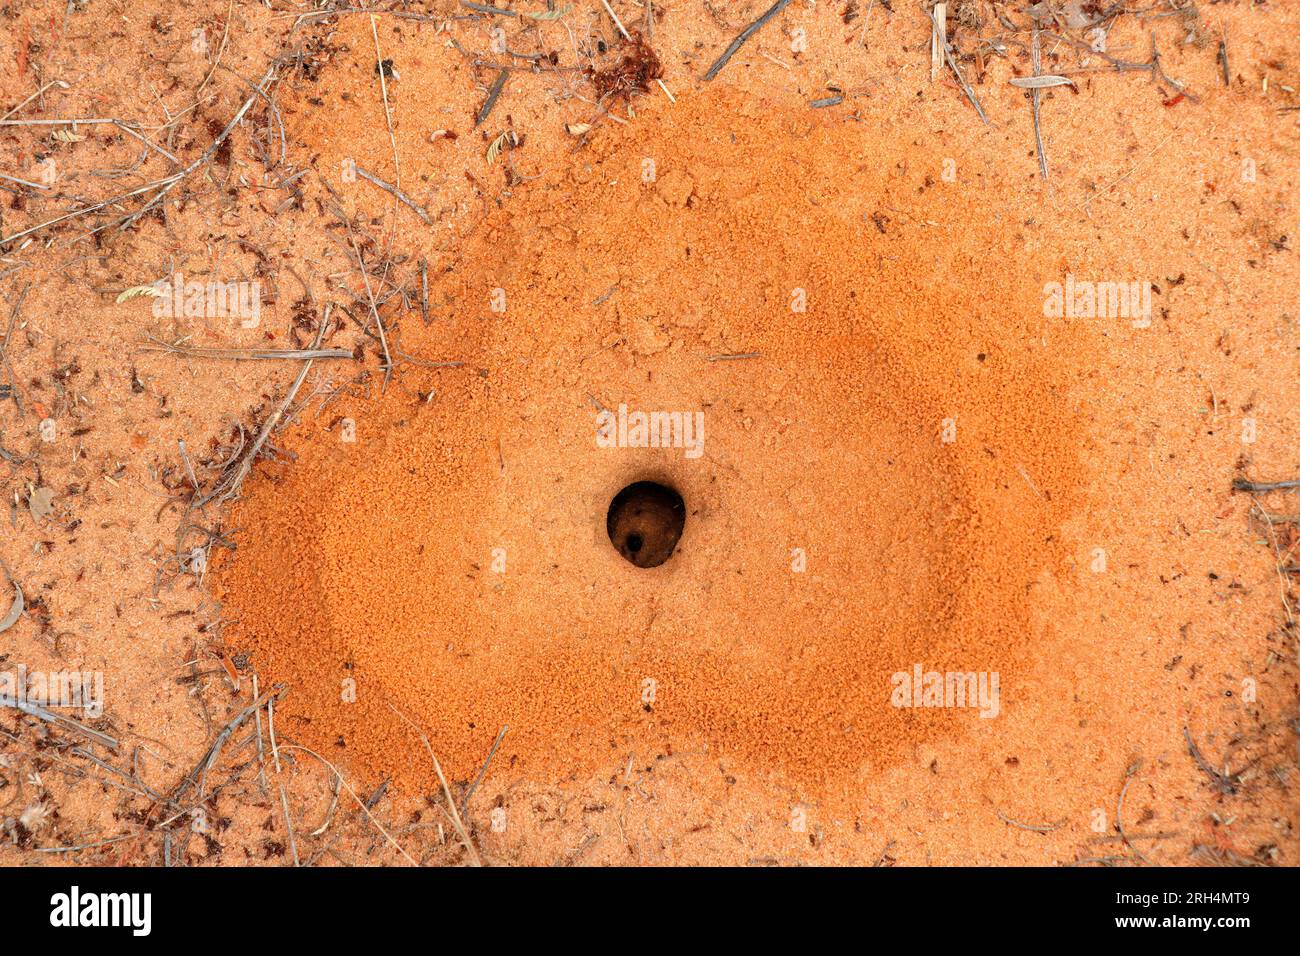 Nido de hormiga en forma de corazón con pequeñas hormigas negras obreras, Sudáfrica Foto de stock